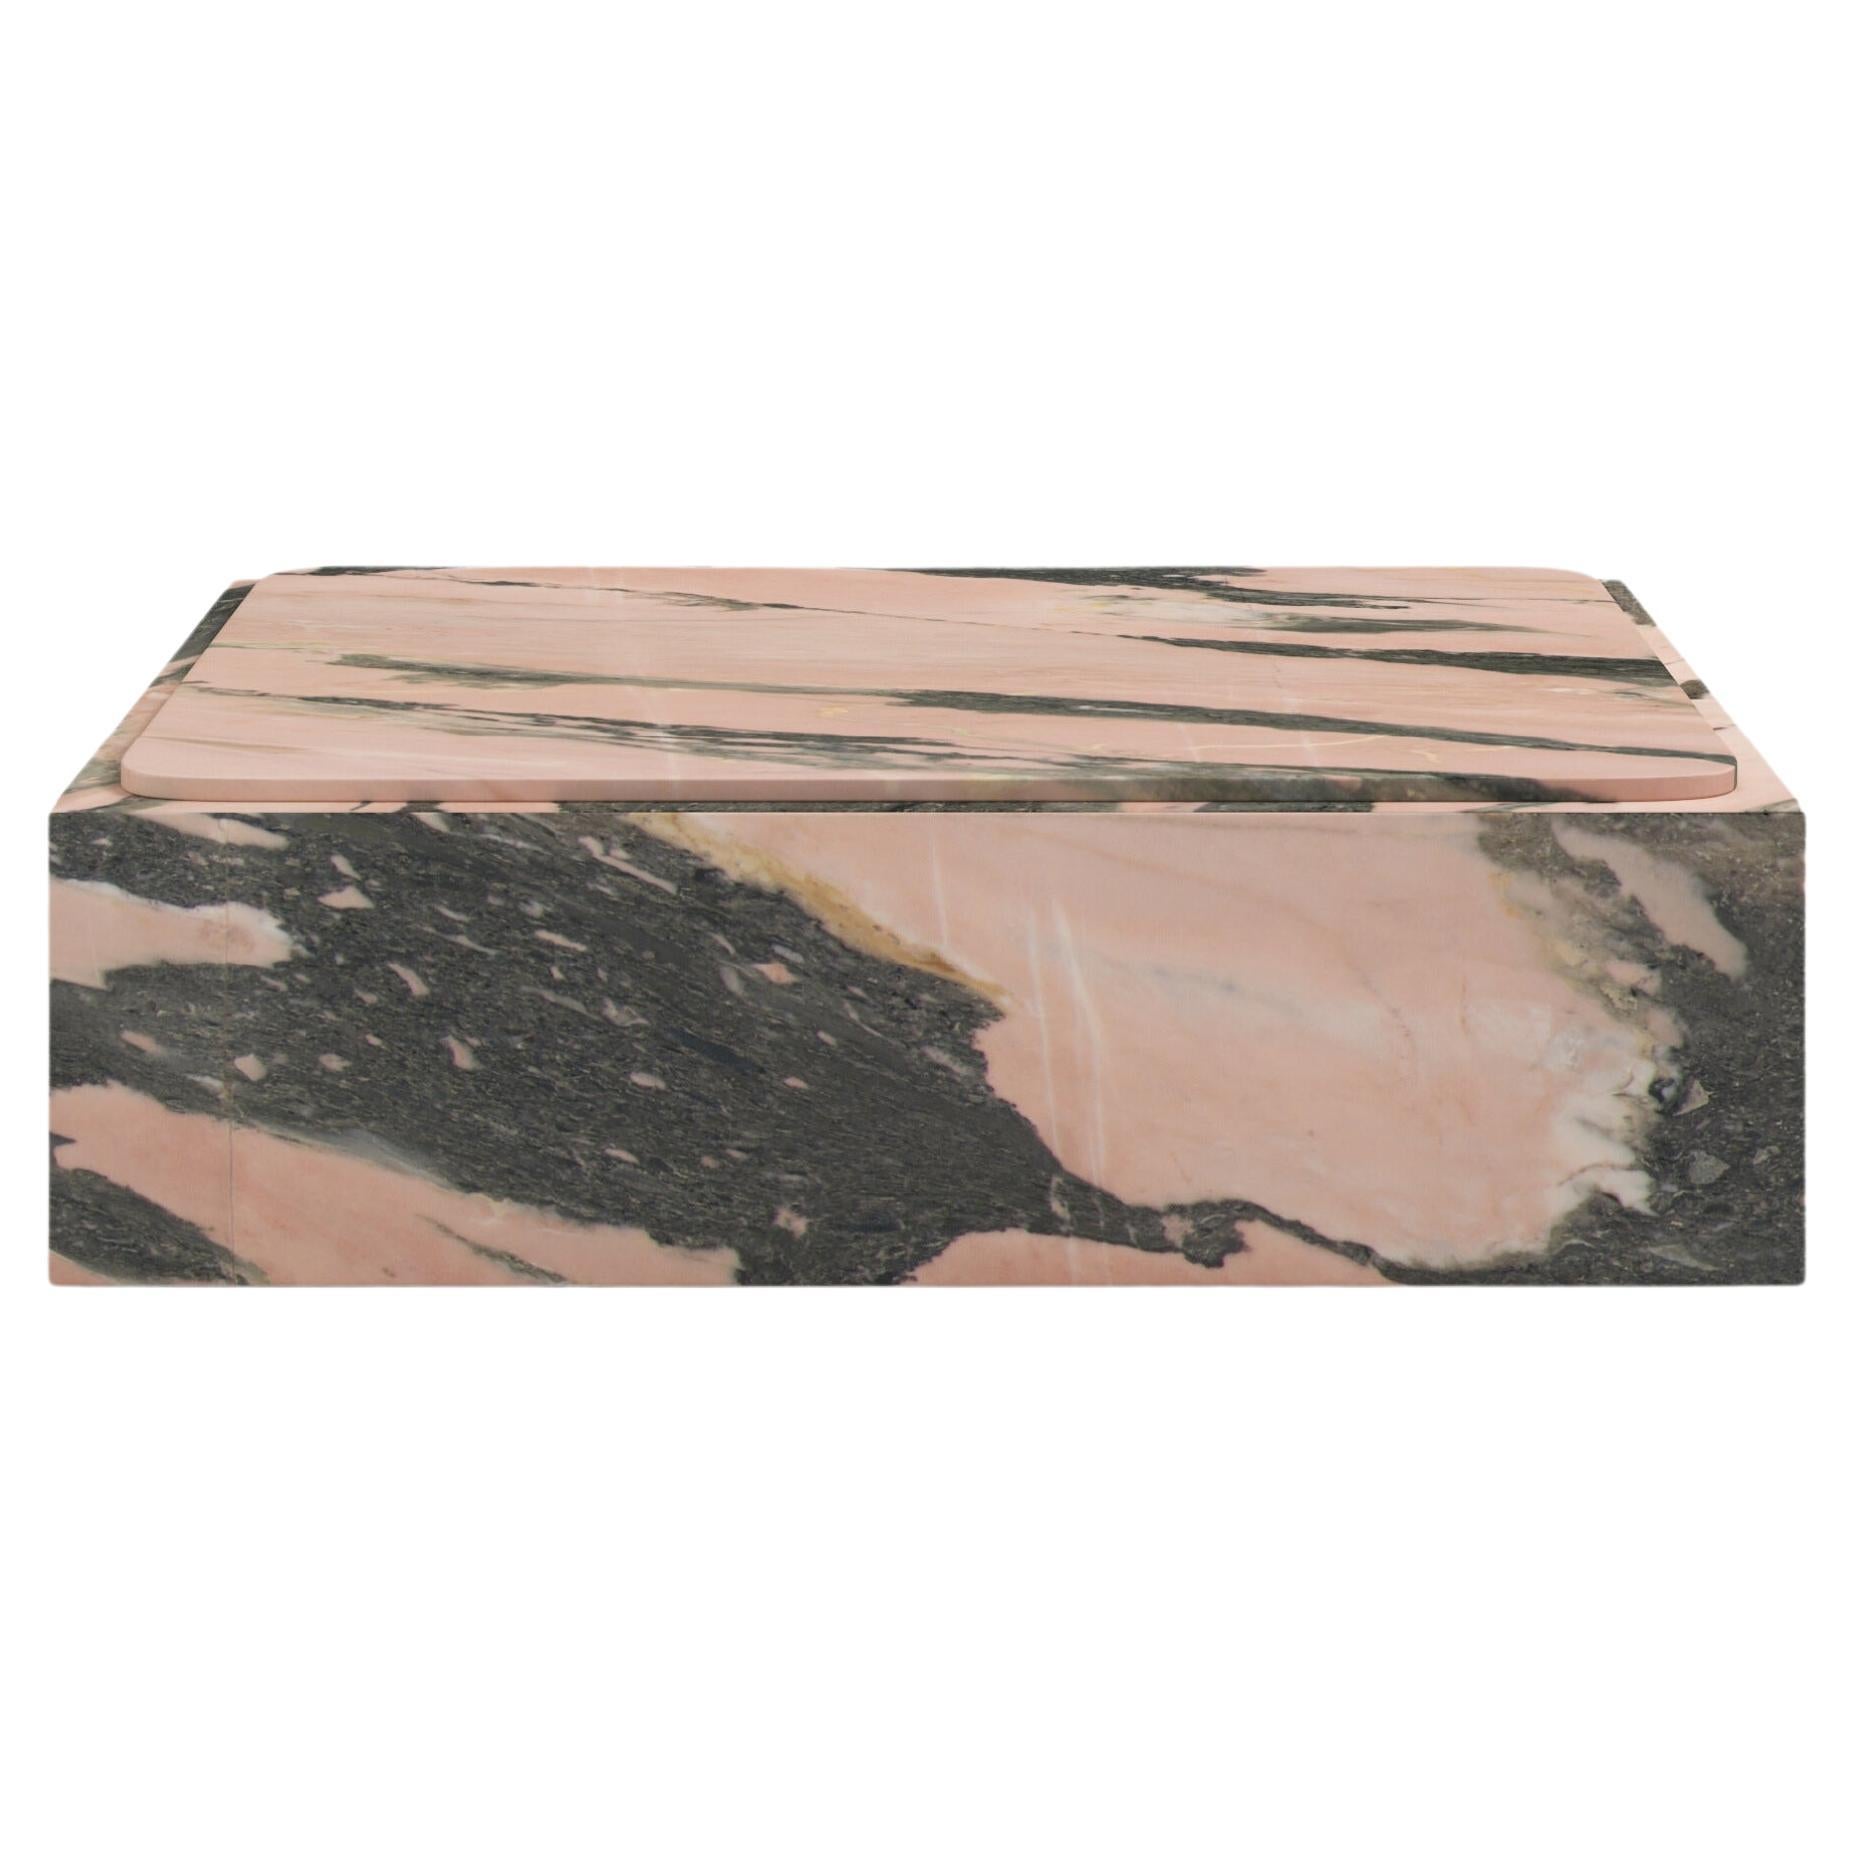 FORM(LA) Cubo Square Plinth Coffee Table 54”L x 54”W x 13”H Portogallo Marble For Sale